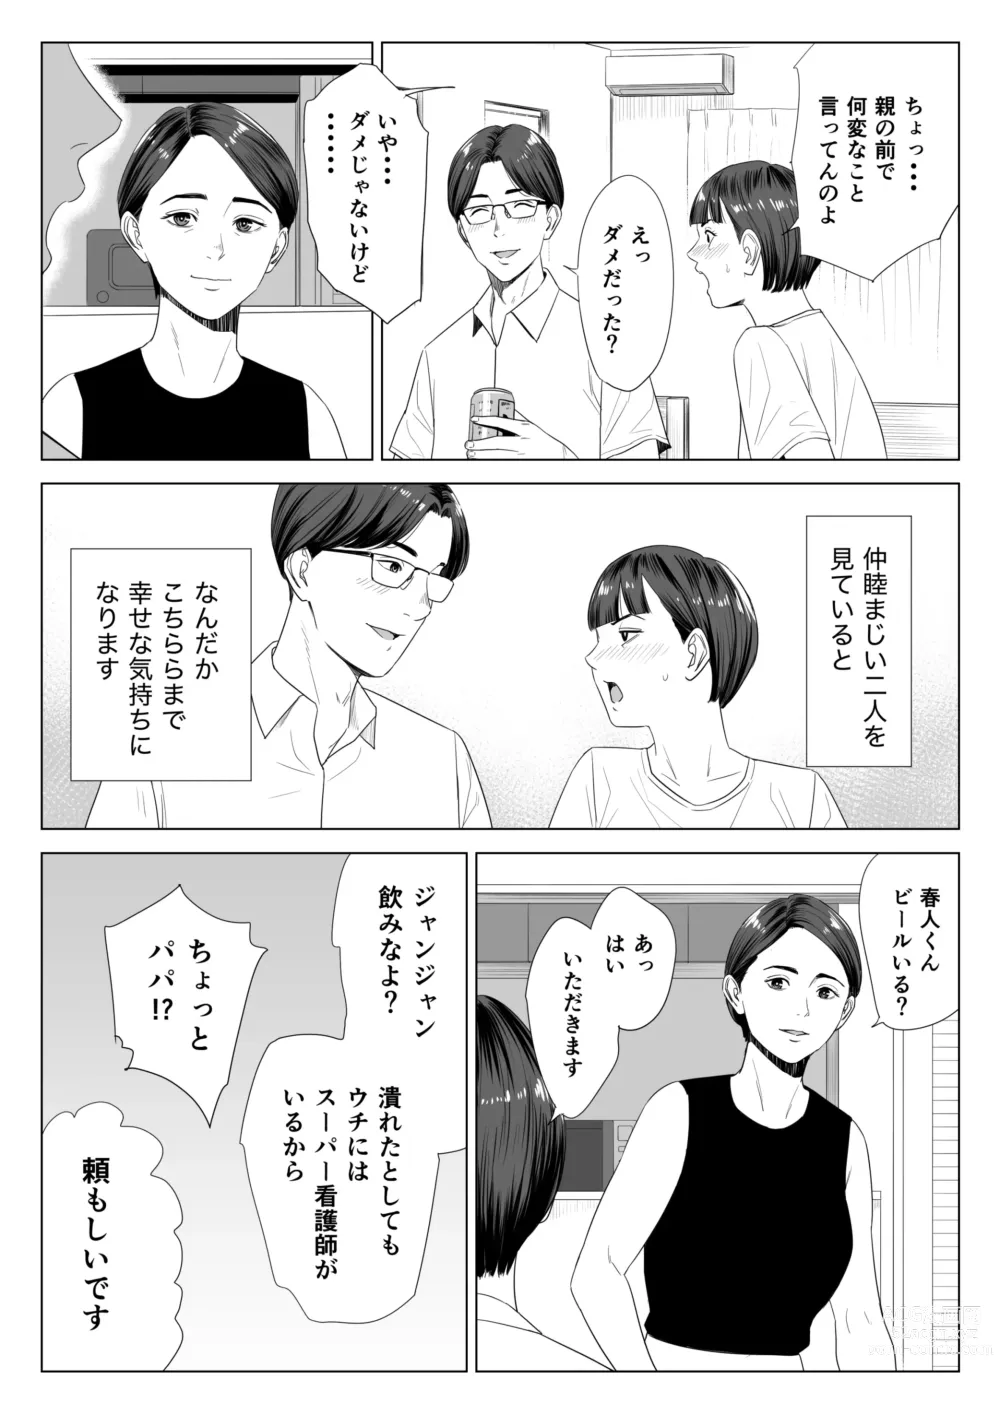 Page 7 of doujinshi Gibo no Tsukaeru Karada.